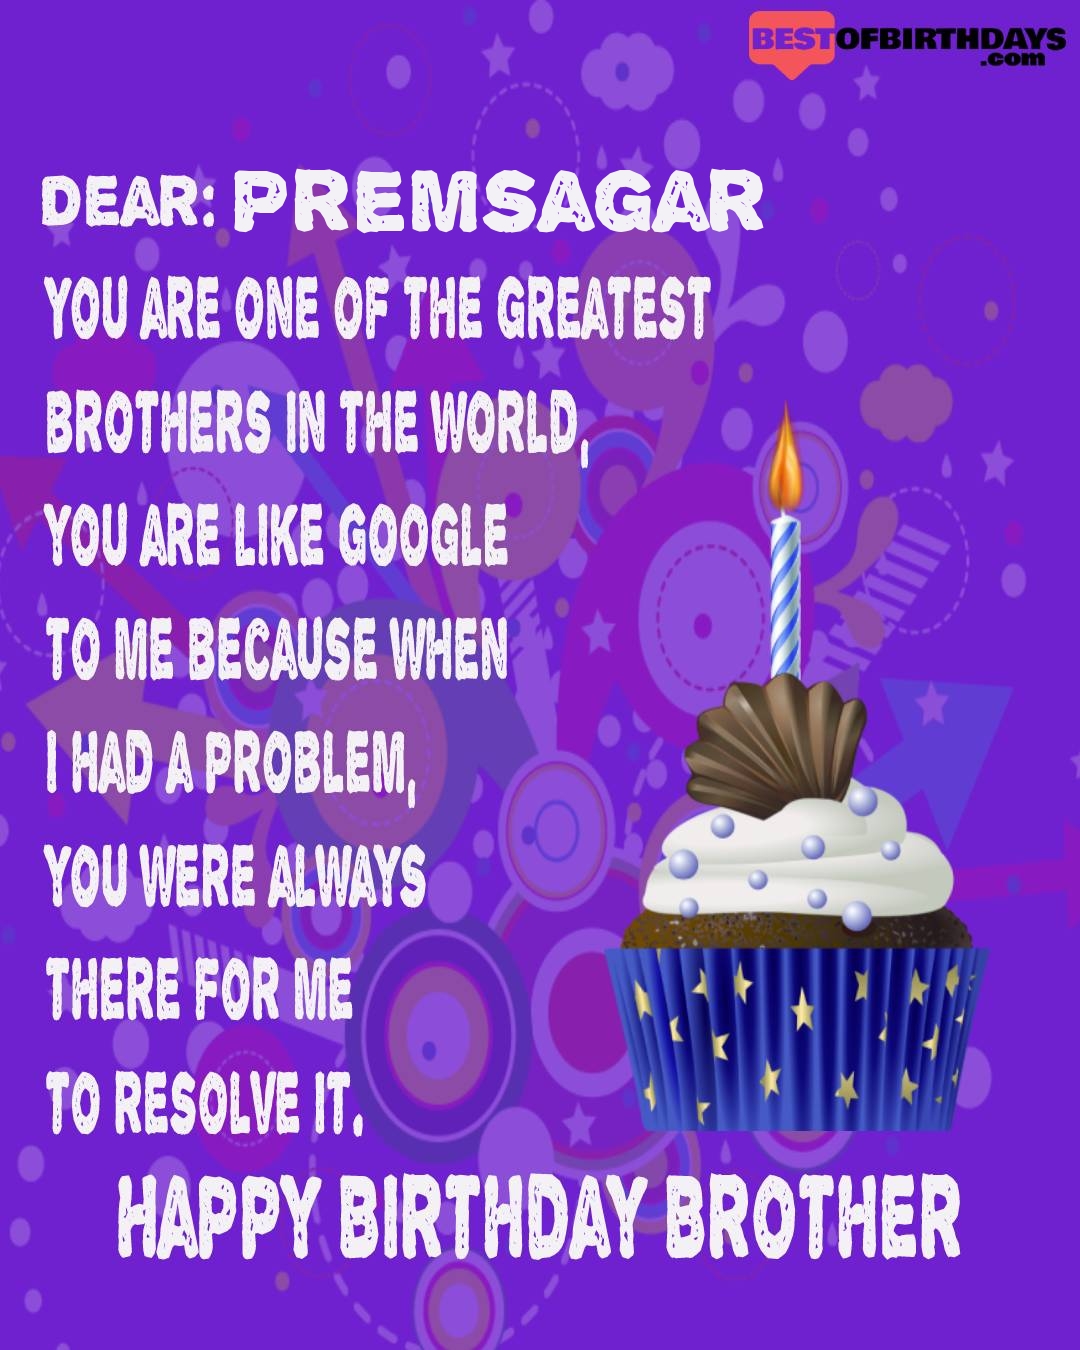 Happy birthday premsagar bhai brother bro